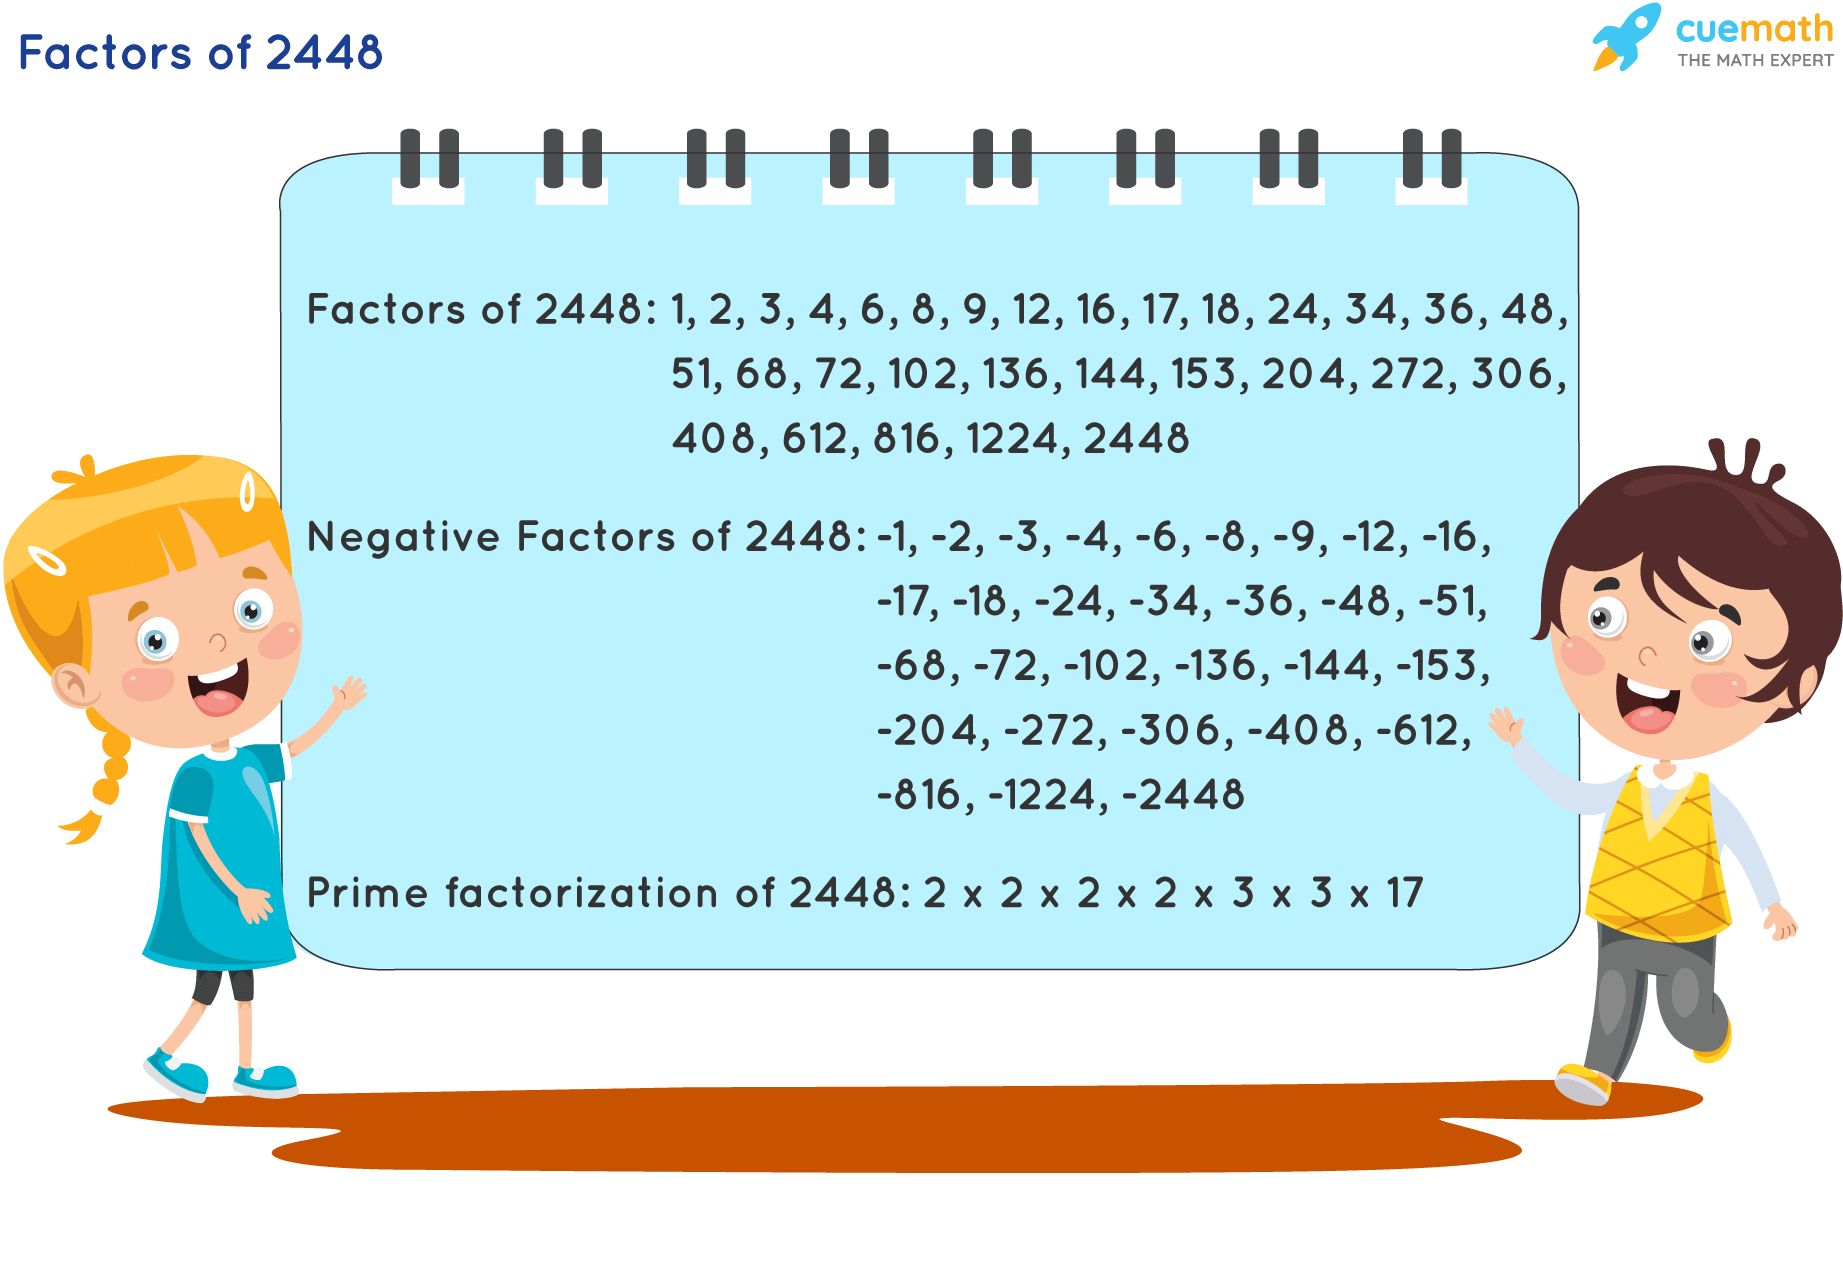 Factors of 2448